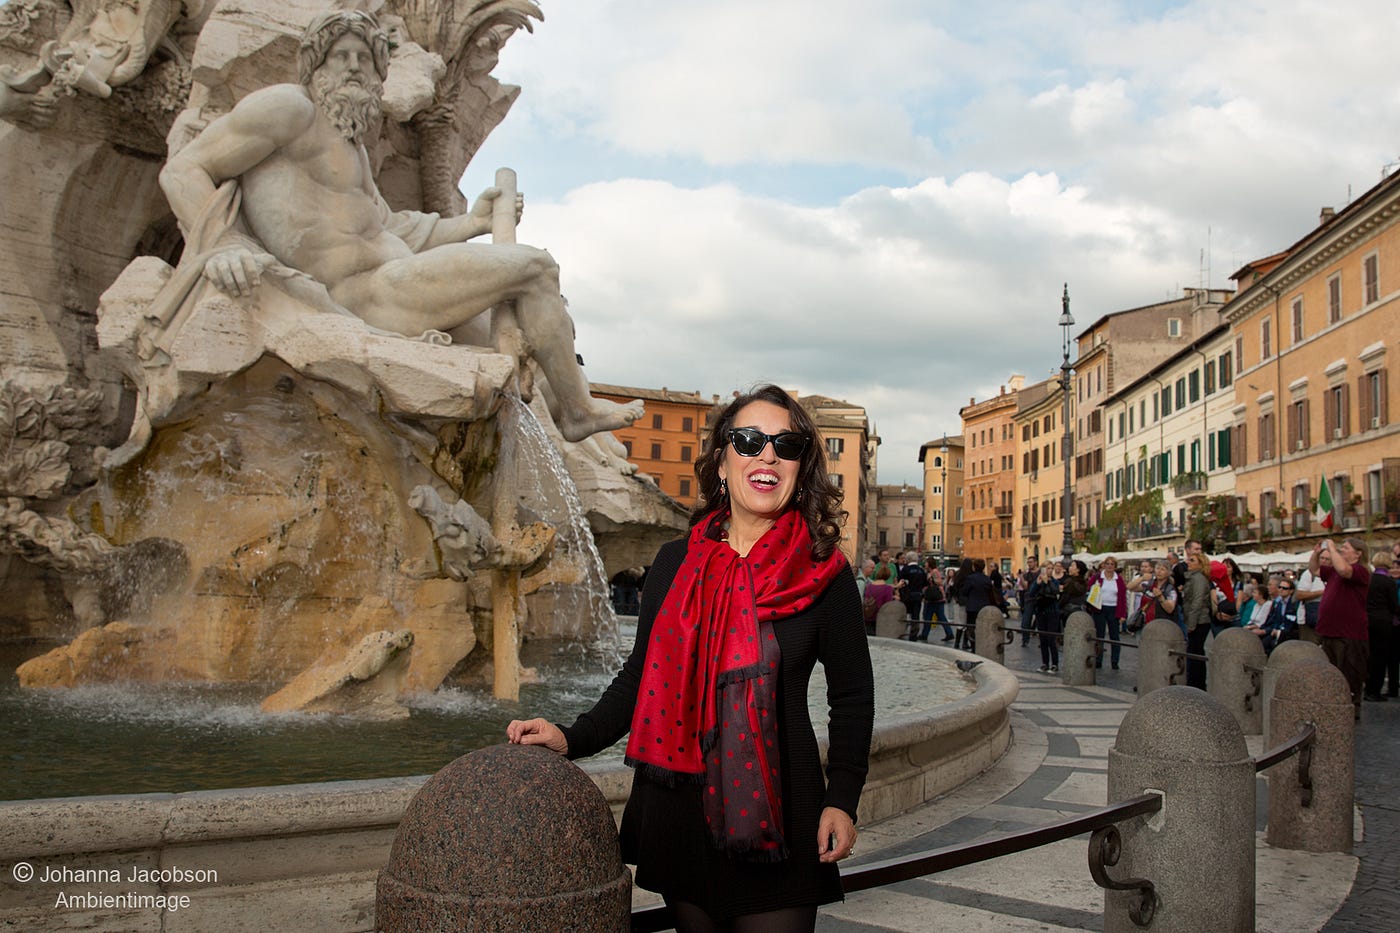 La Befana Italy Tradition - Just Italy Travel Guide